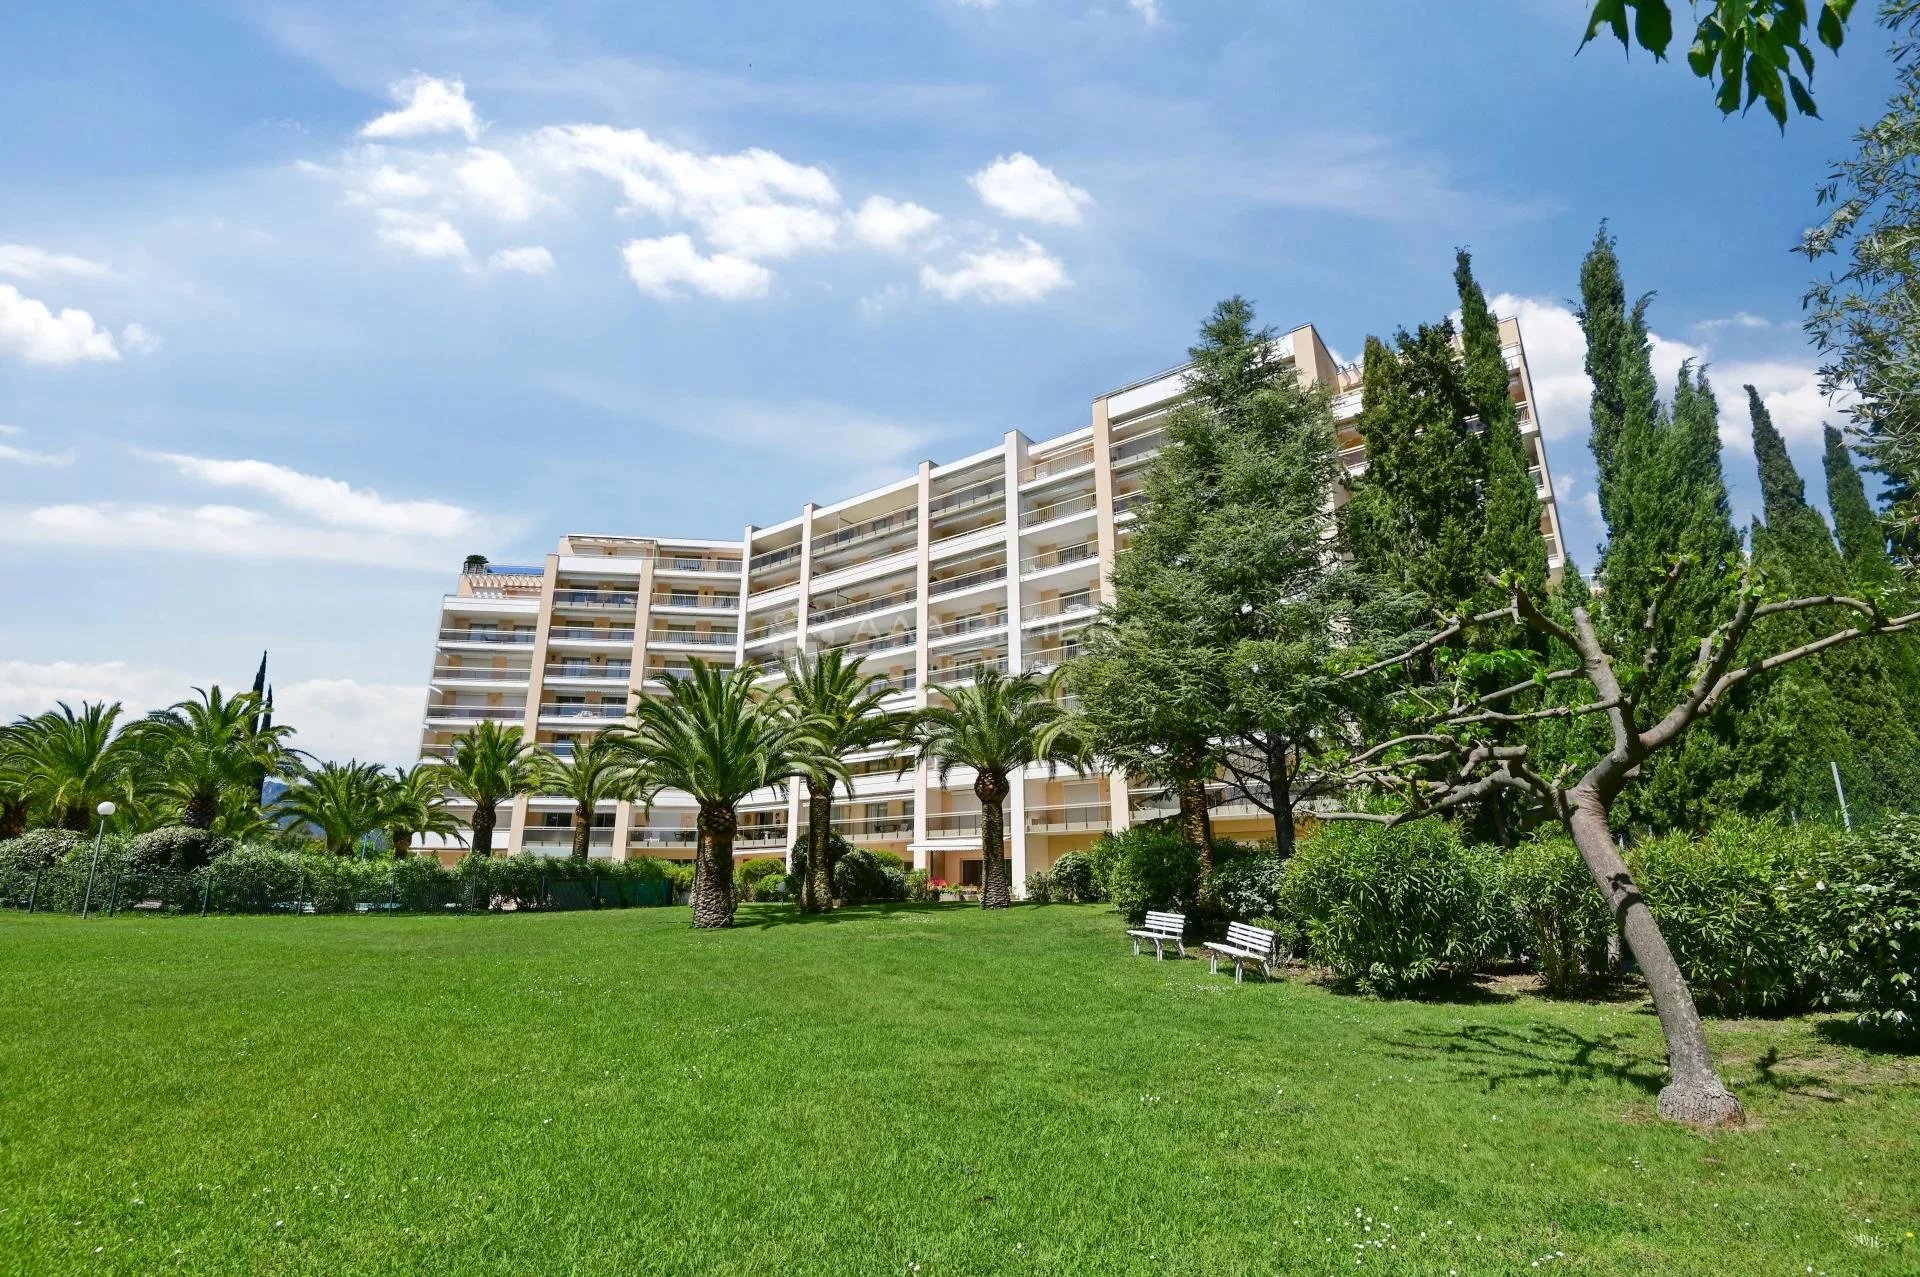 VENDU - Exclusivité - Mandelieu Cannes Marina - Beau 3 pièces avec terrasse de 21m² et garage dans résidence de standing avec gardien, piscine et tennis